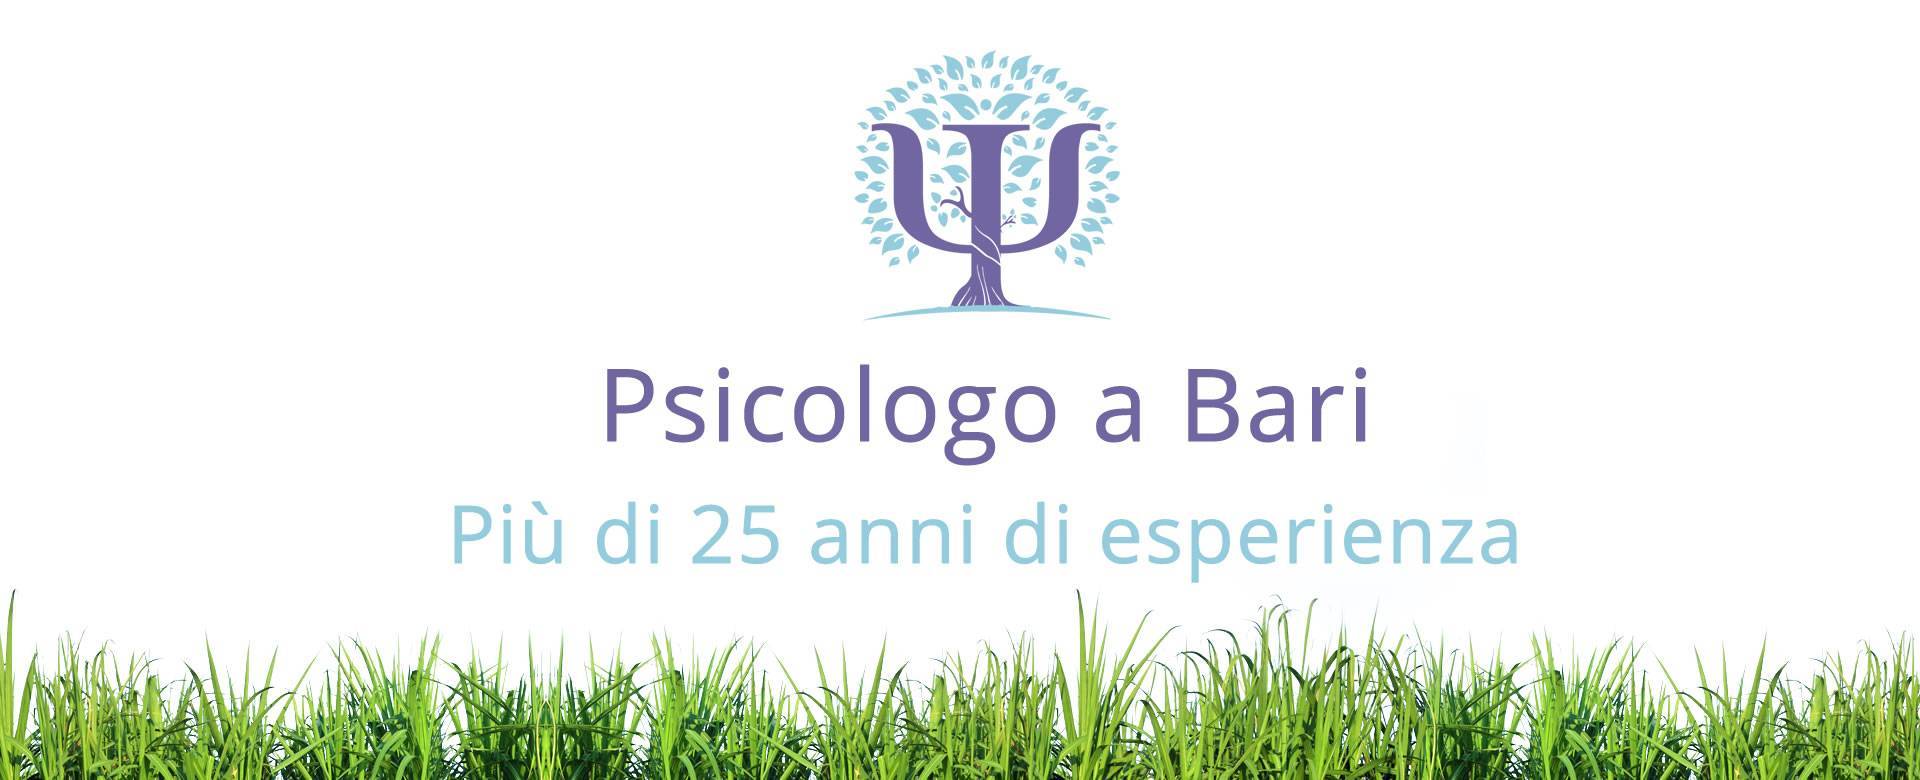 psicologo_bari